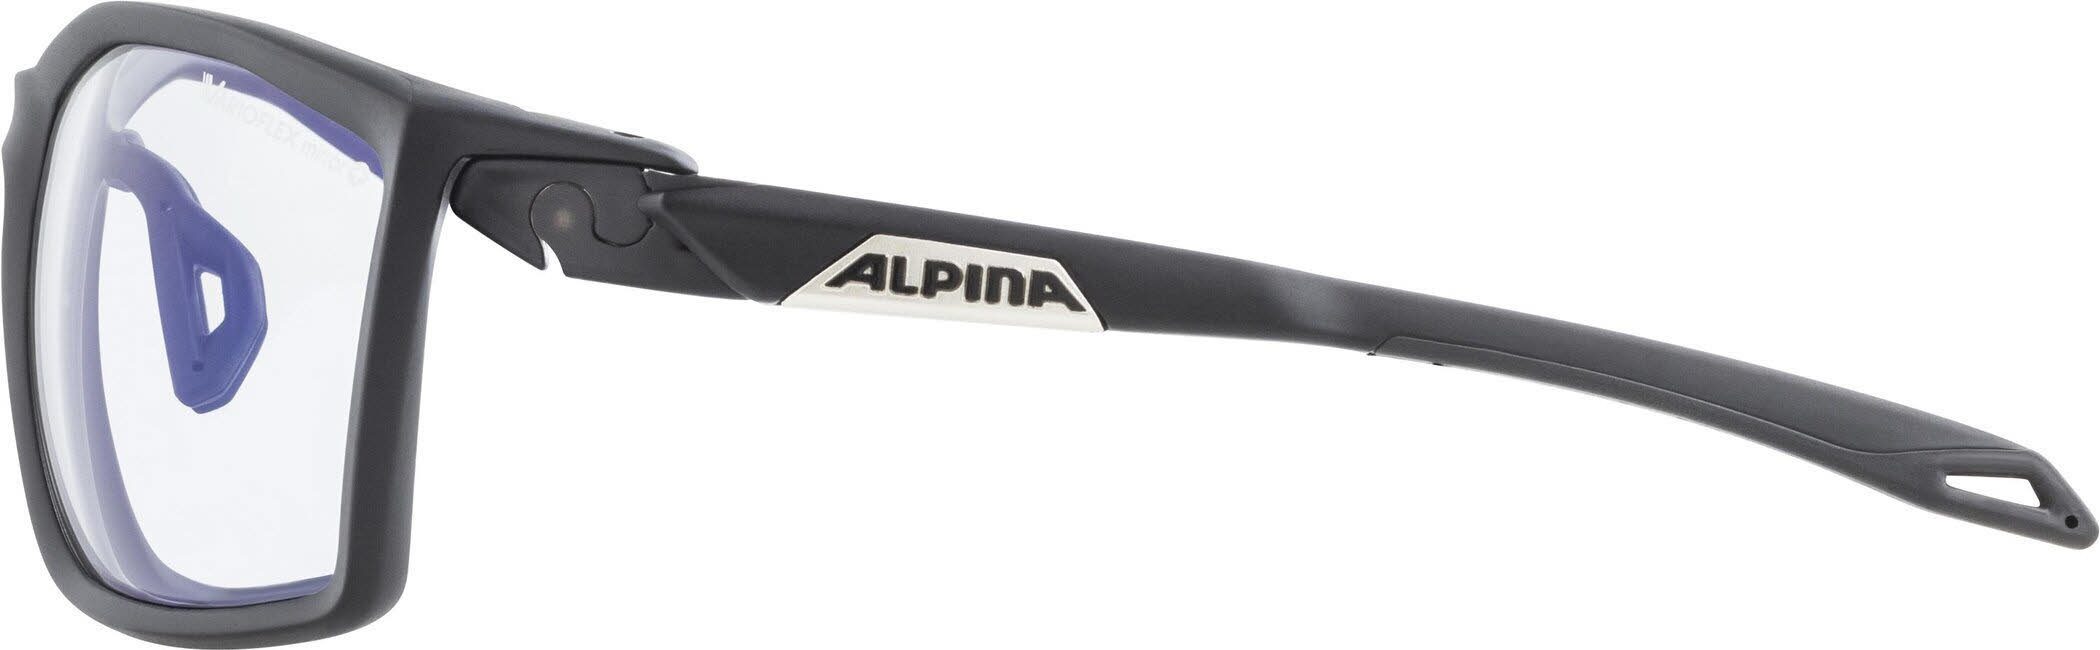 Skibrille Alpina